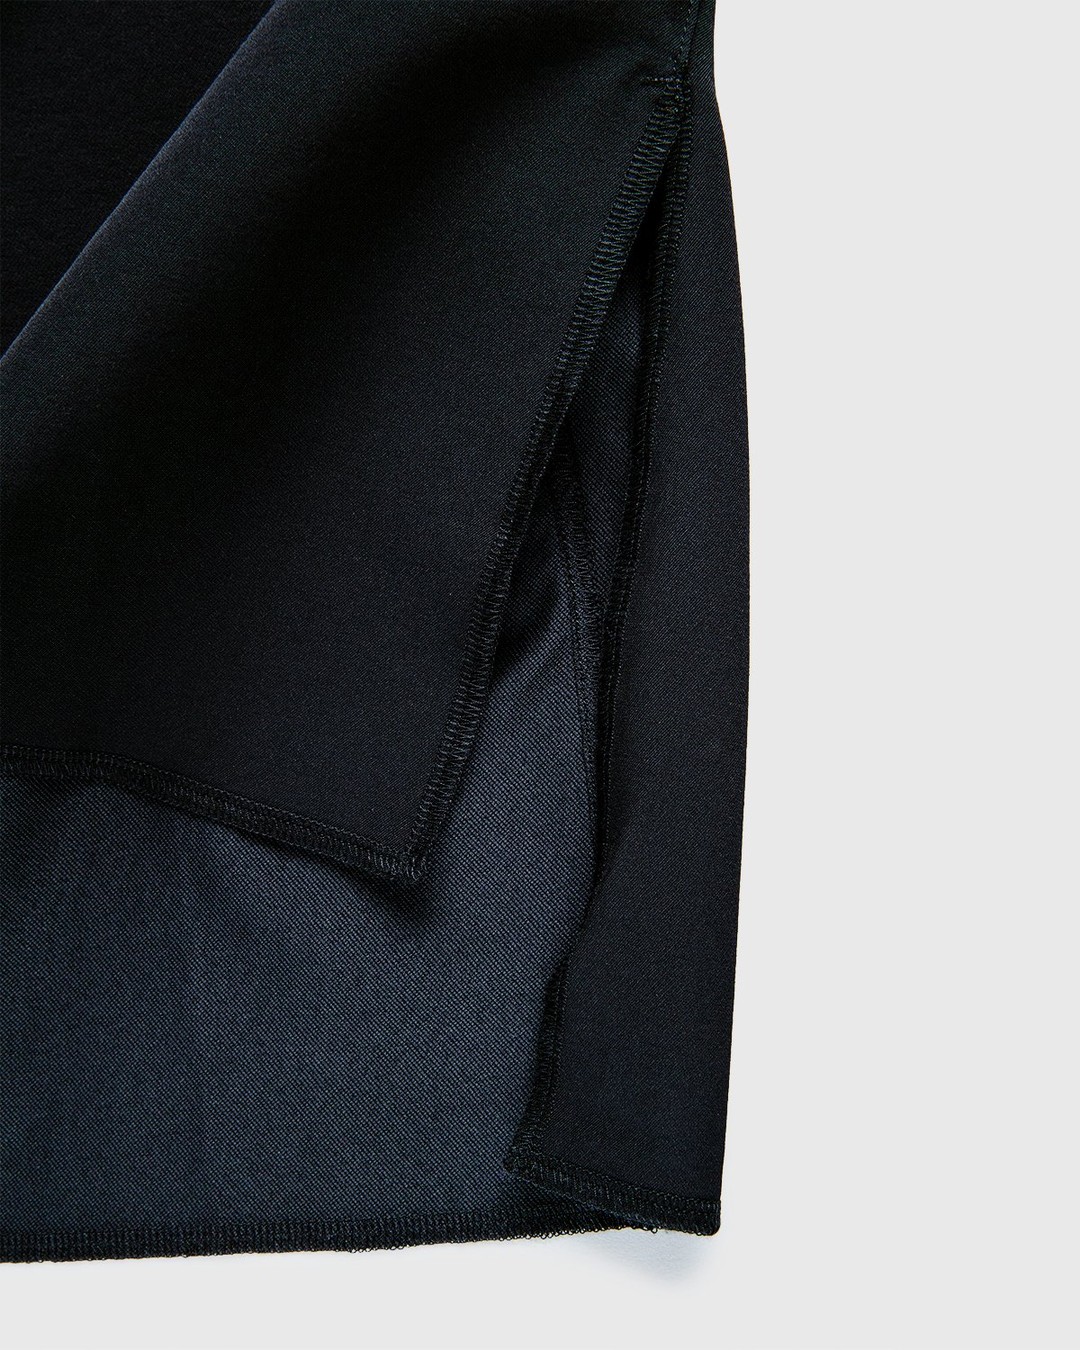 ACRONYM – S24-DS Short Sleeve Black - T-Shirts - Black - Image 8